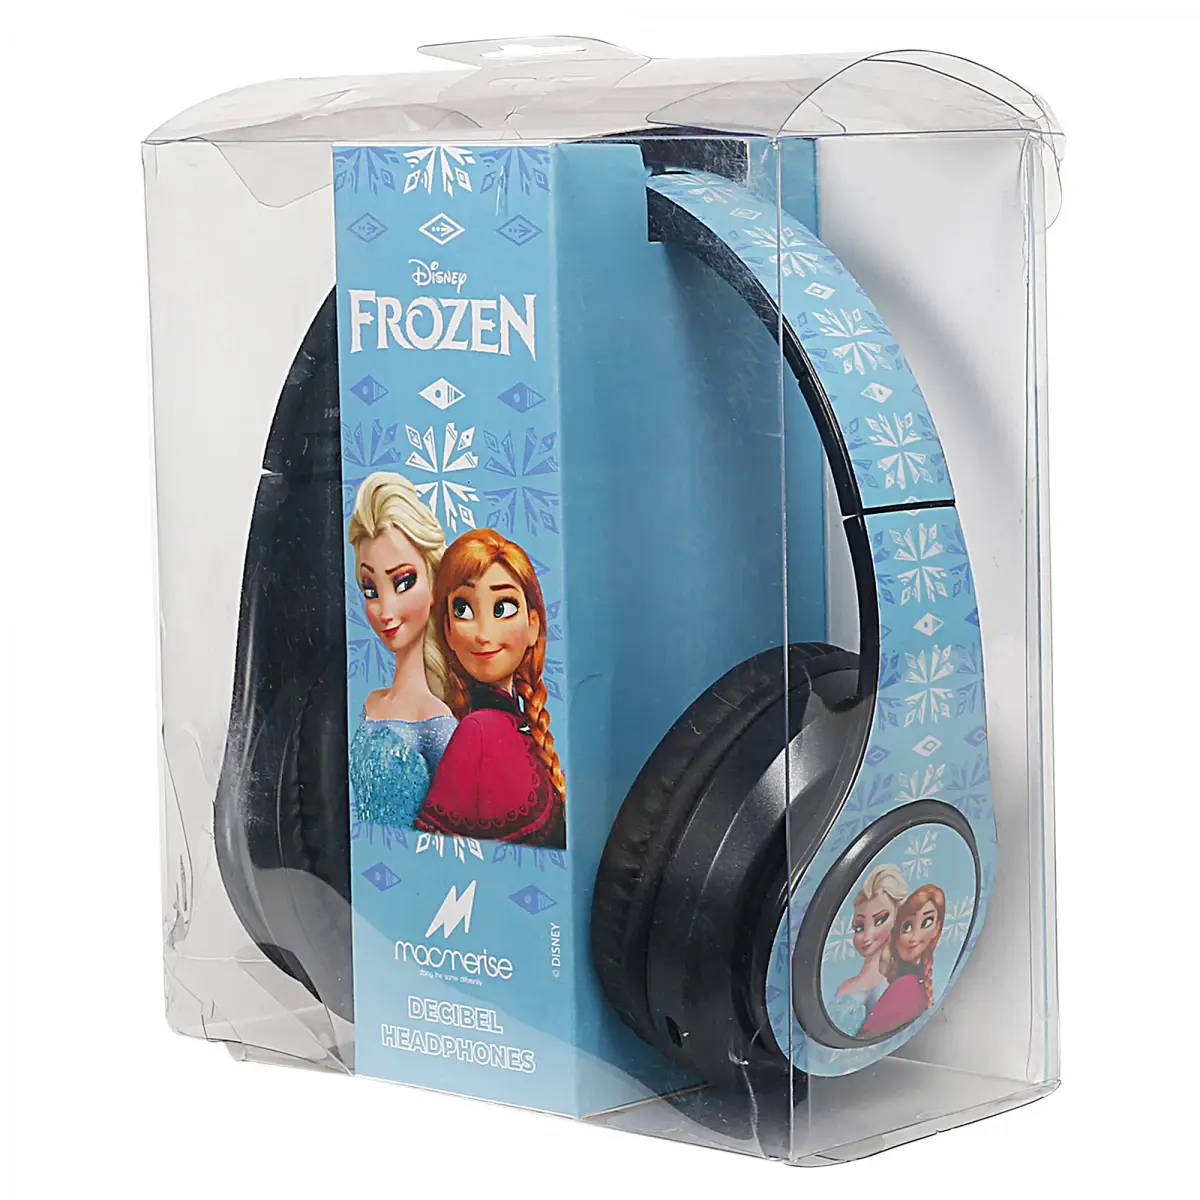 Macmerise Frozen Disney Decibel Headphones for Kids, Kids for 5Y+, Blue